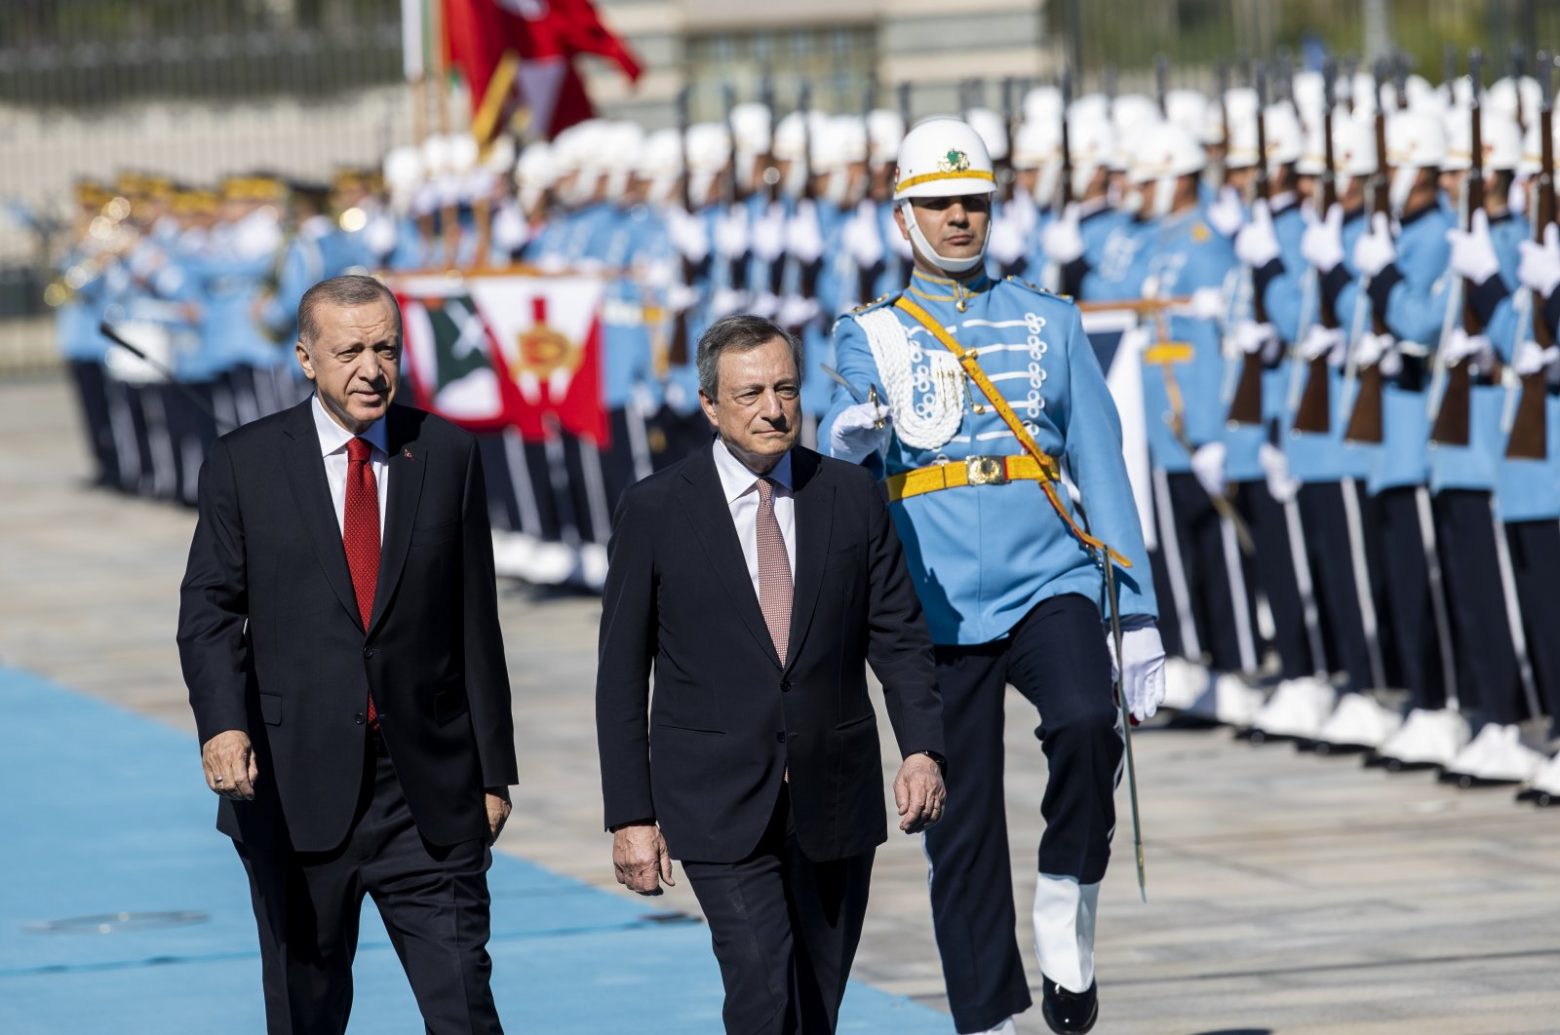 Ερντογάν: Προσπαθεί να δημιουργήσει ένταση μεταξύ Ελλάδας - Ιταλίας